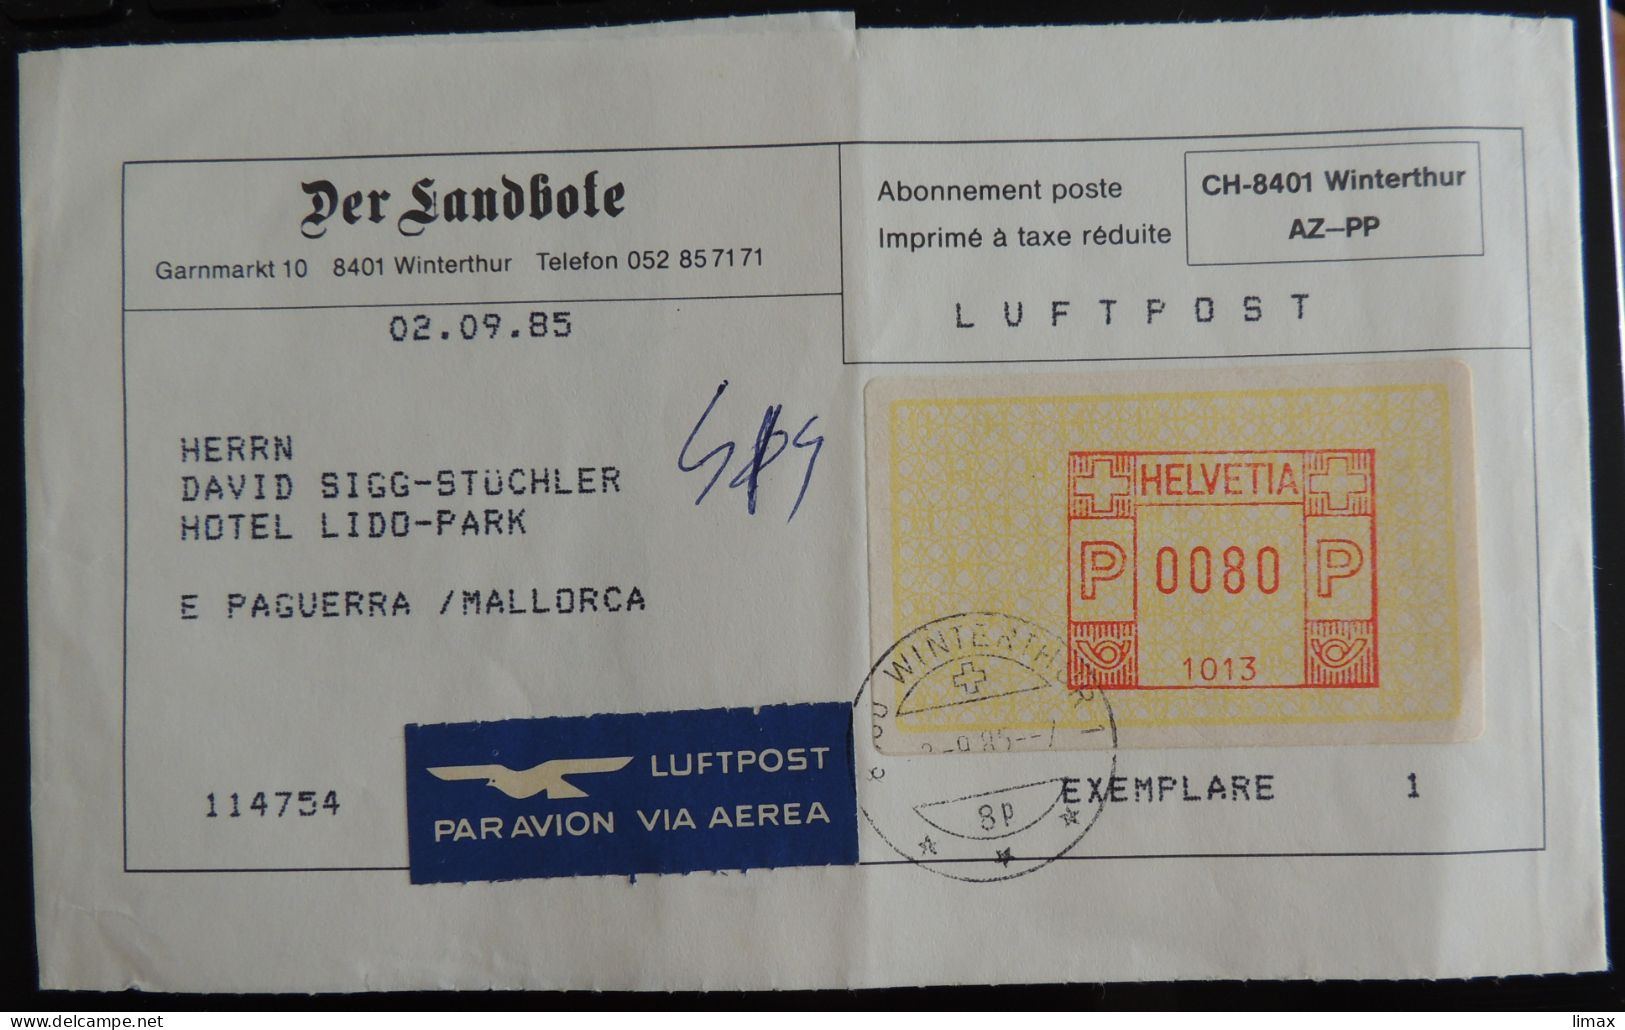 Der Landbote 8401 Winterthur 1985 > Paguerra [sic!] Mallorca - Luftpost - Affranchissements Mécaniques